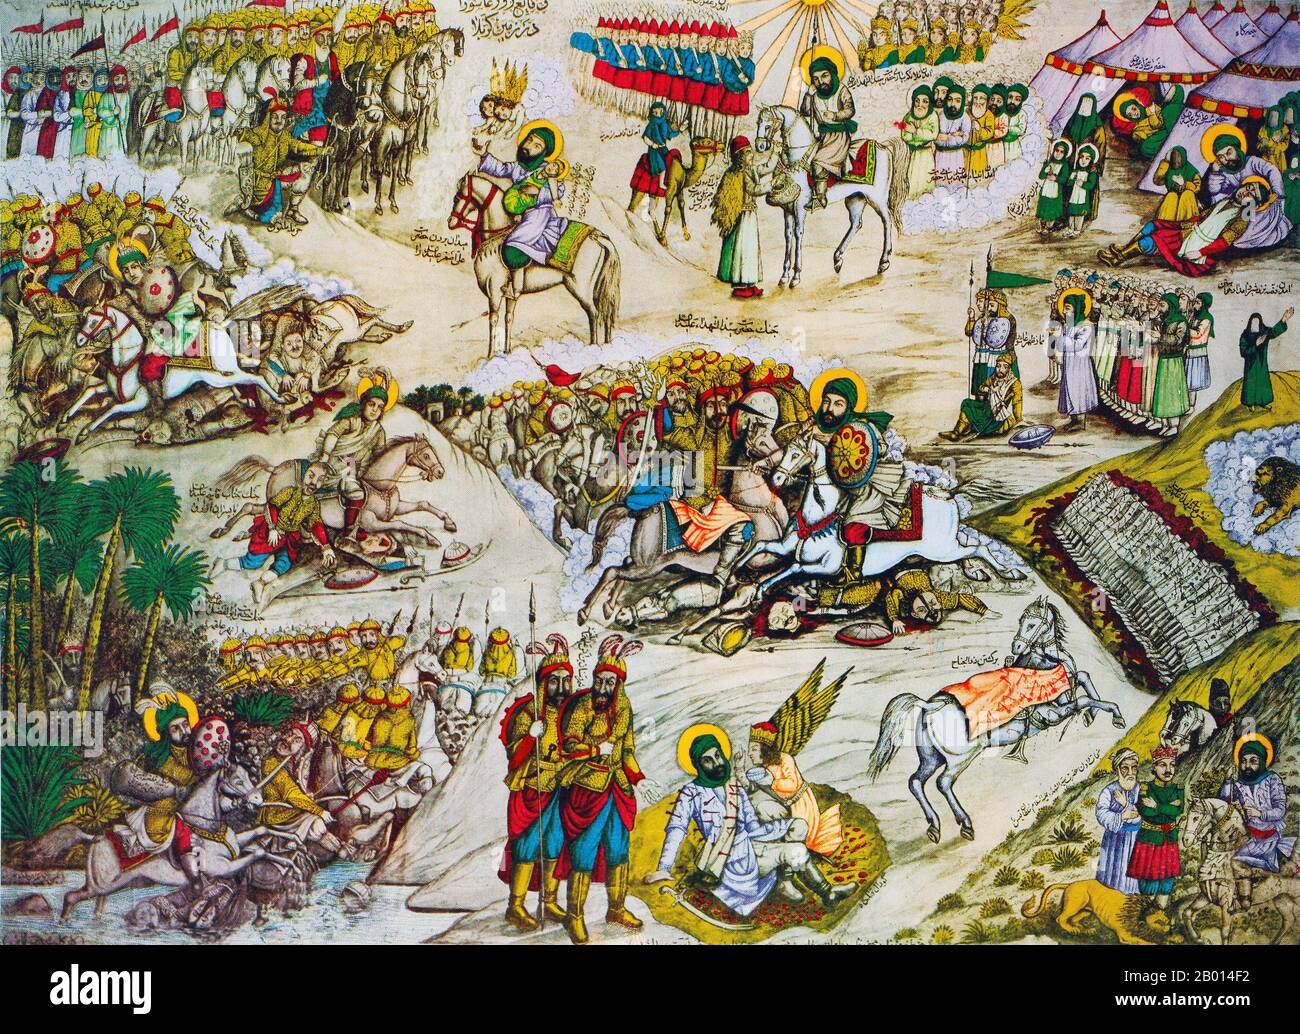 Irak : représentation moderne (XXe siècle) de la bataille de Karbala, d'une importance capitale pour l'islam chiite, menée en 680. À la bataille de Karbala, les disciples d'Ali, dirigés par le petit-fils du prophète Mahomet, Husayn, ont été battus par les forces de l'Umayyad Caliph Yazid. Cet événement, souvent illustré dans des imprimés populaires, est utilisé par les chiites pour rappeler le rôle du martyr qu’ils estiment avoir joué tout au long de l’histoire. La chronologie ordinaire a été abolie dans cet imprimé. Plusieurs épisodes de la bataille sont promulgués en même temps. Banque D'Images